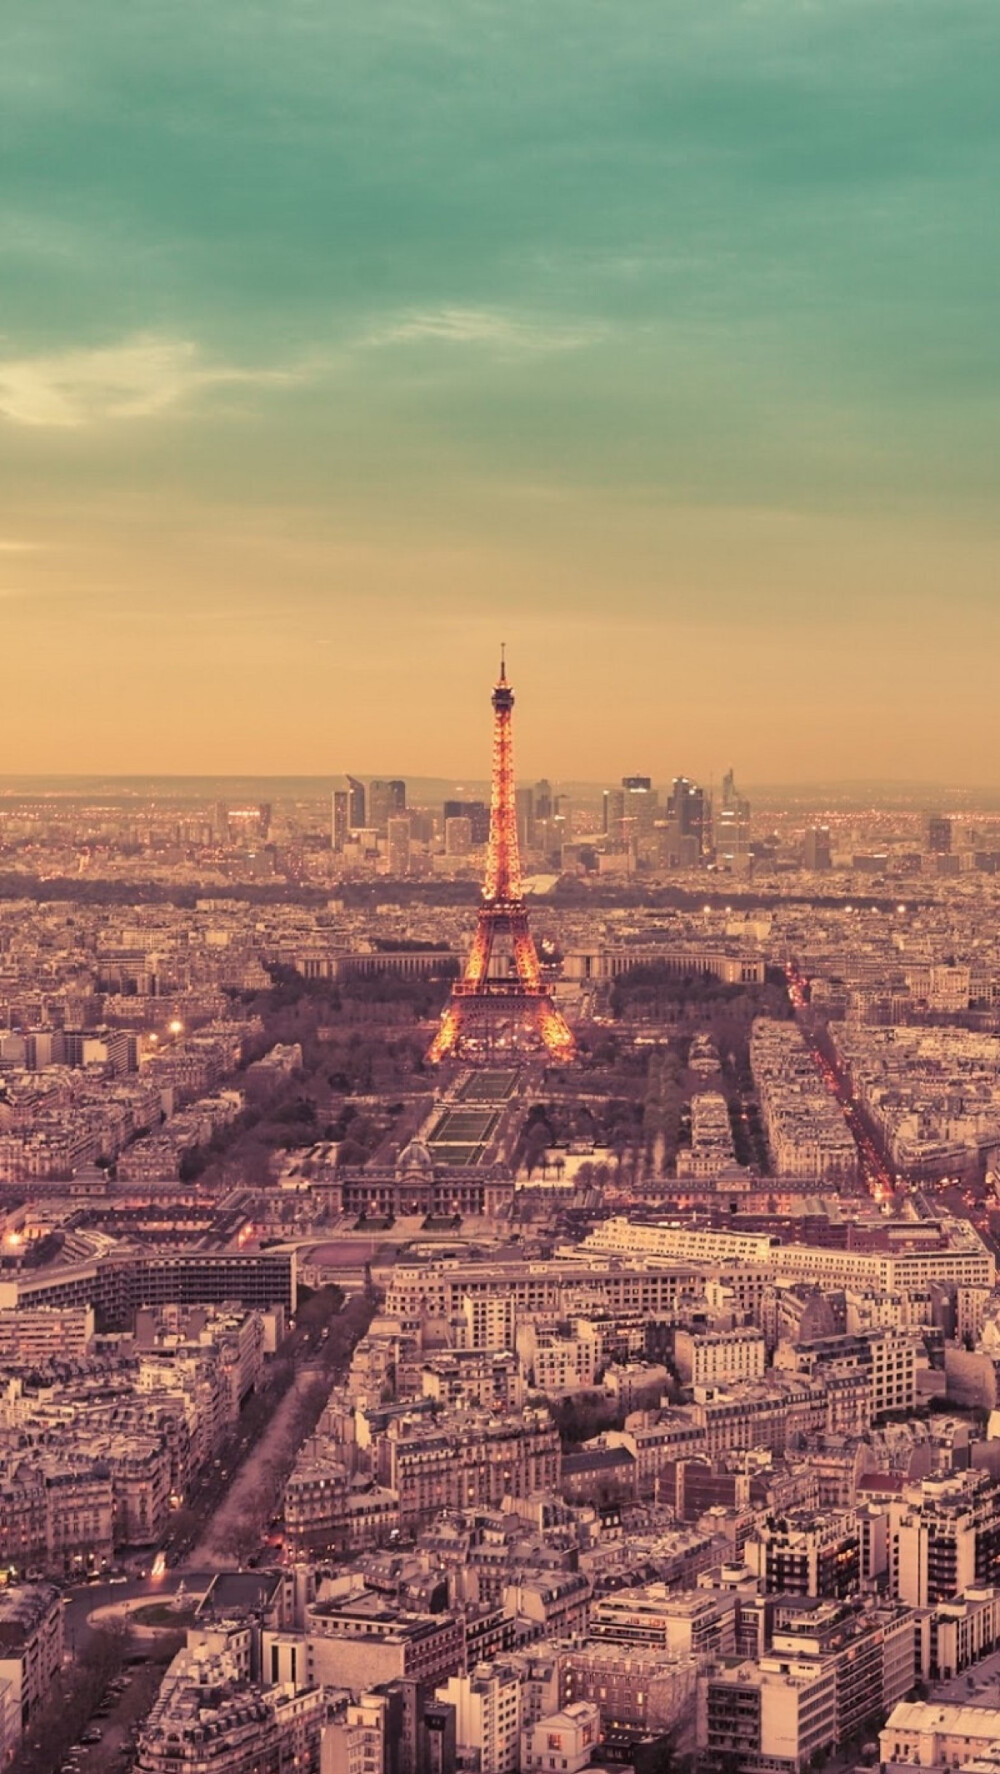 拾光App 壁纸 iPhone 清新 素材 欧美 句子 插画 素材 摄影作品 Paris巴黎 埃菲尔铁塔